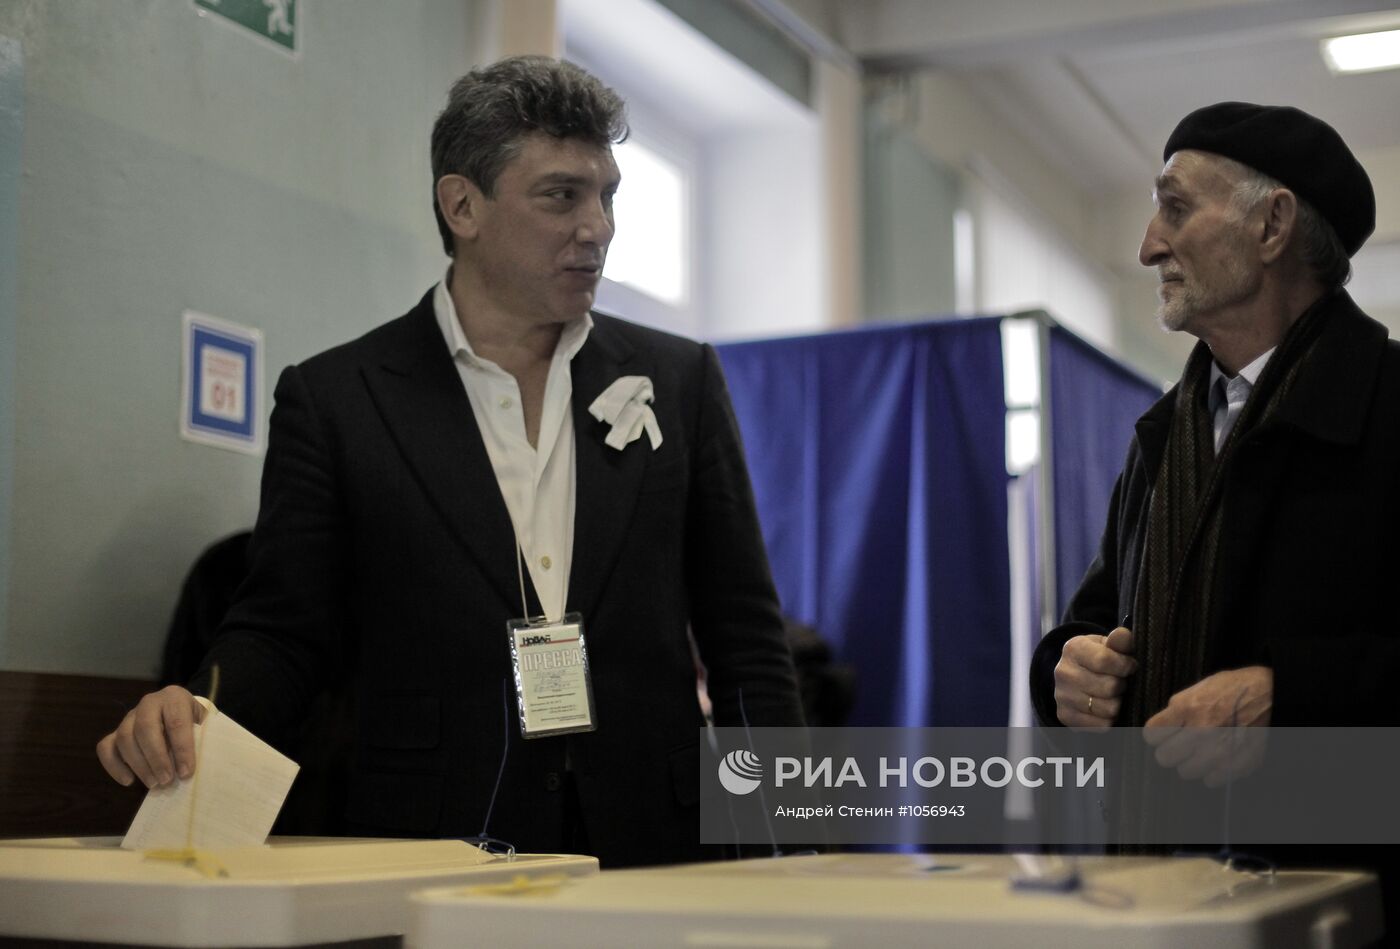 Голосование Бориса Немцова на выборах президента РФ